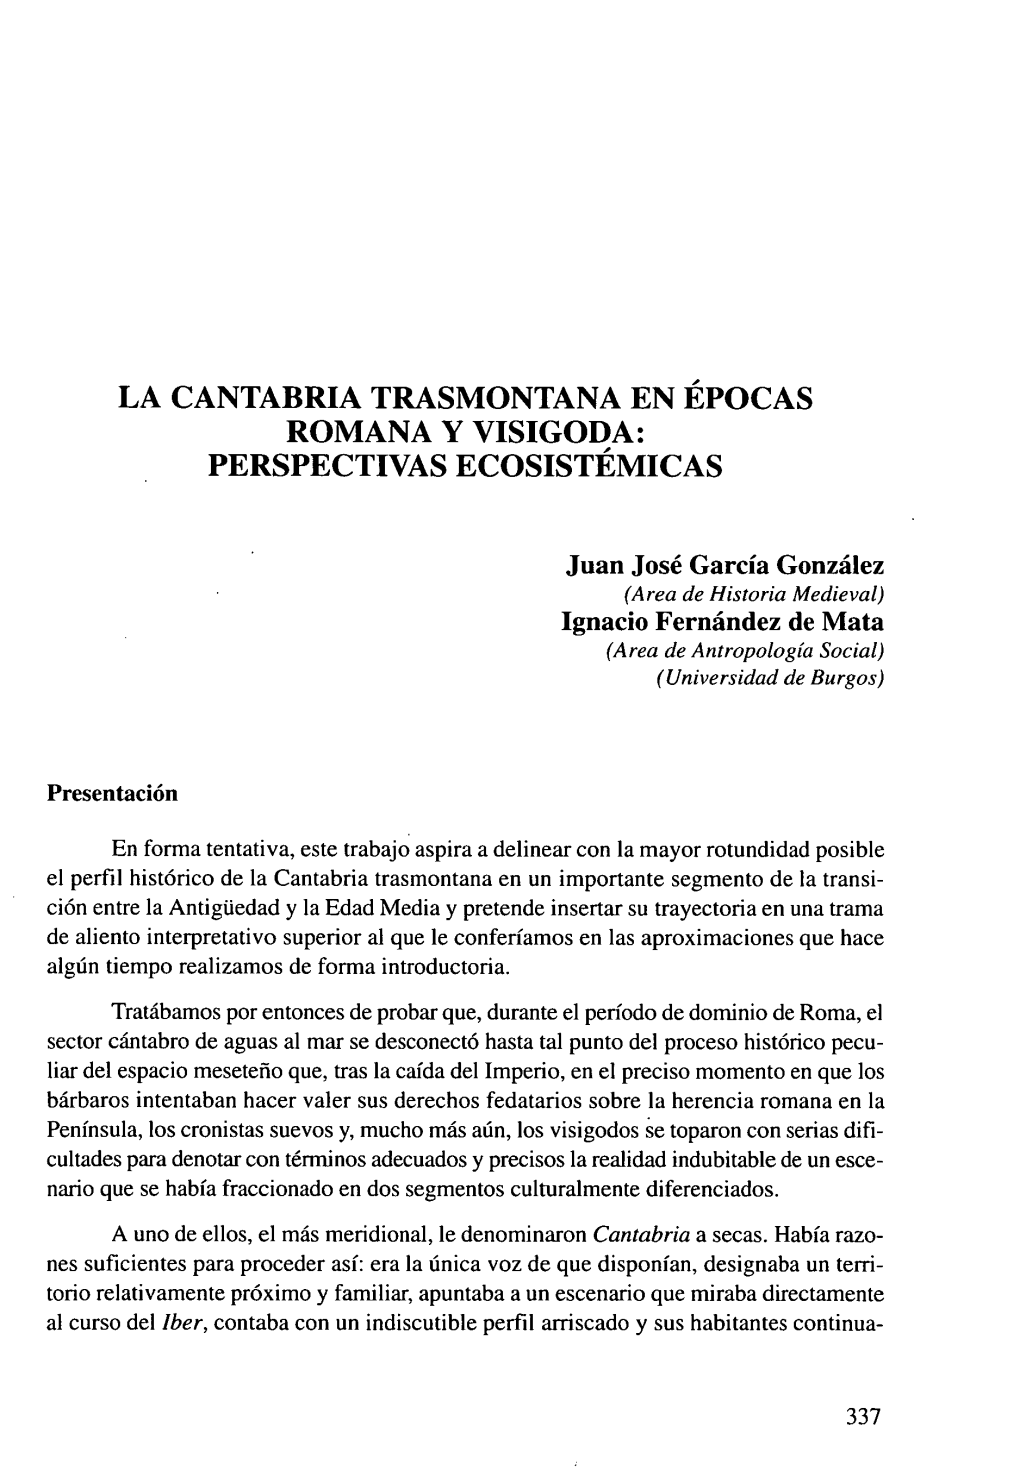 La Cantabria Trasmontana En Épocas Romana Y Visigoda: Perspectivas Ecosistémicas